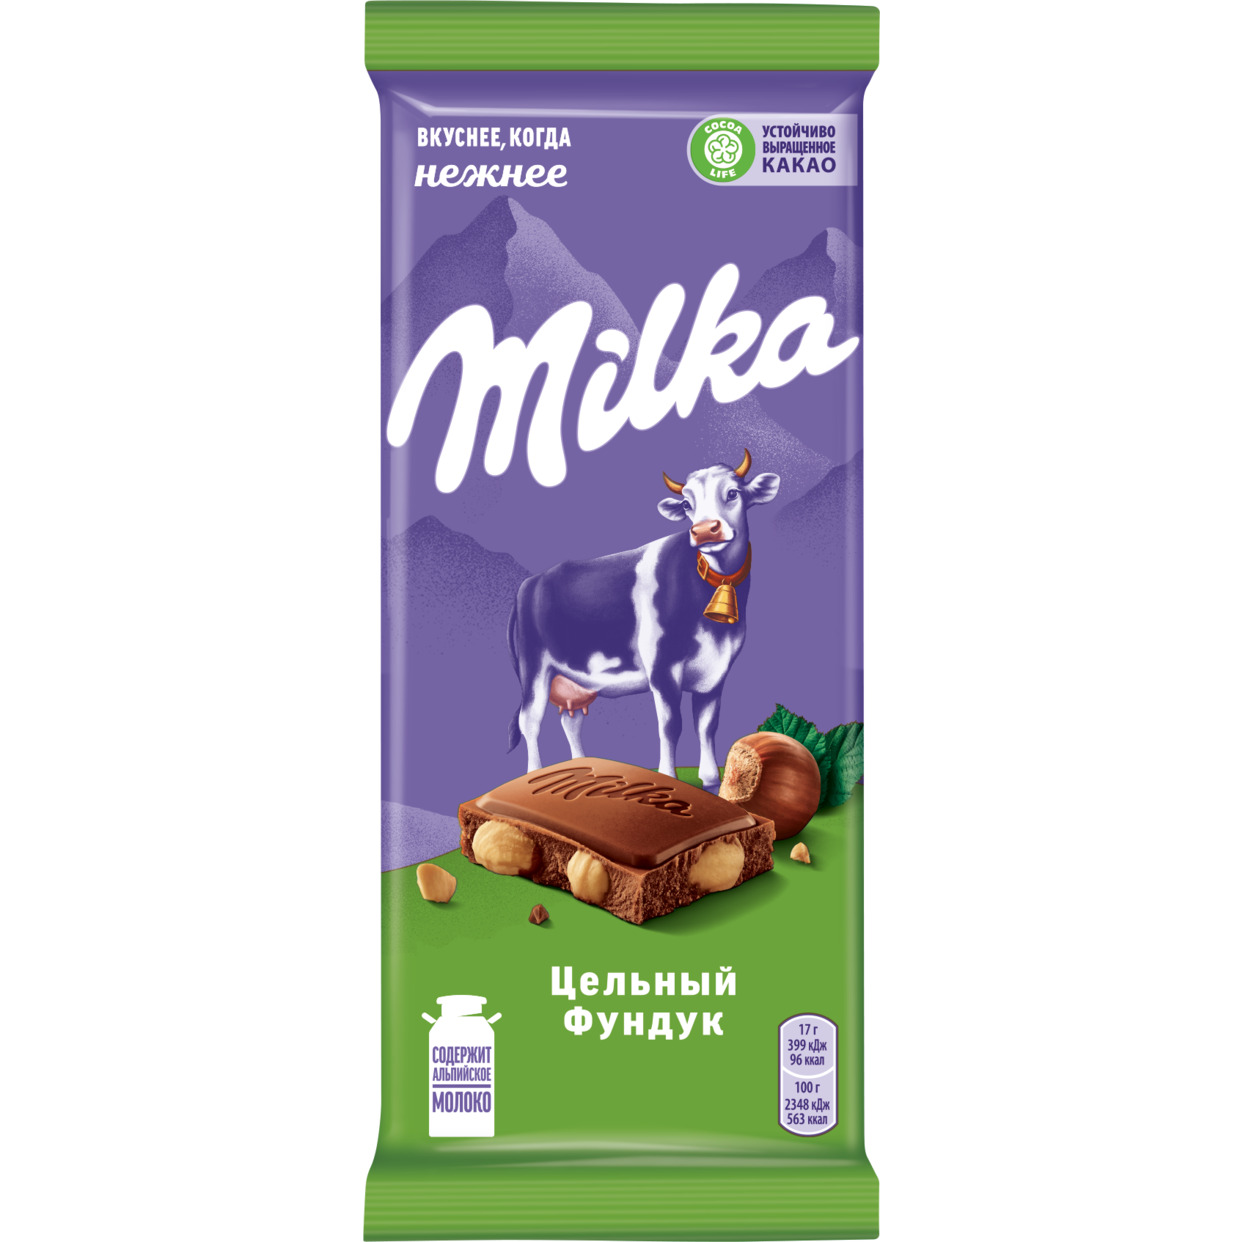 Шоколад молочный MILKA с цельным фундуком, 85г по акции в Пятерочке